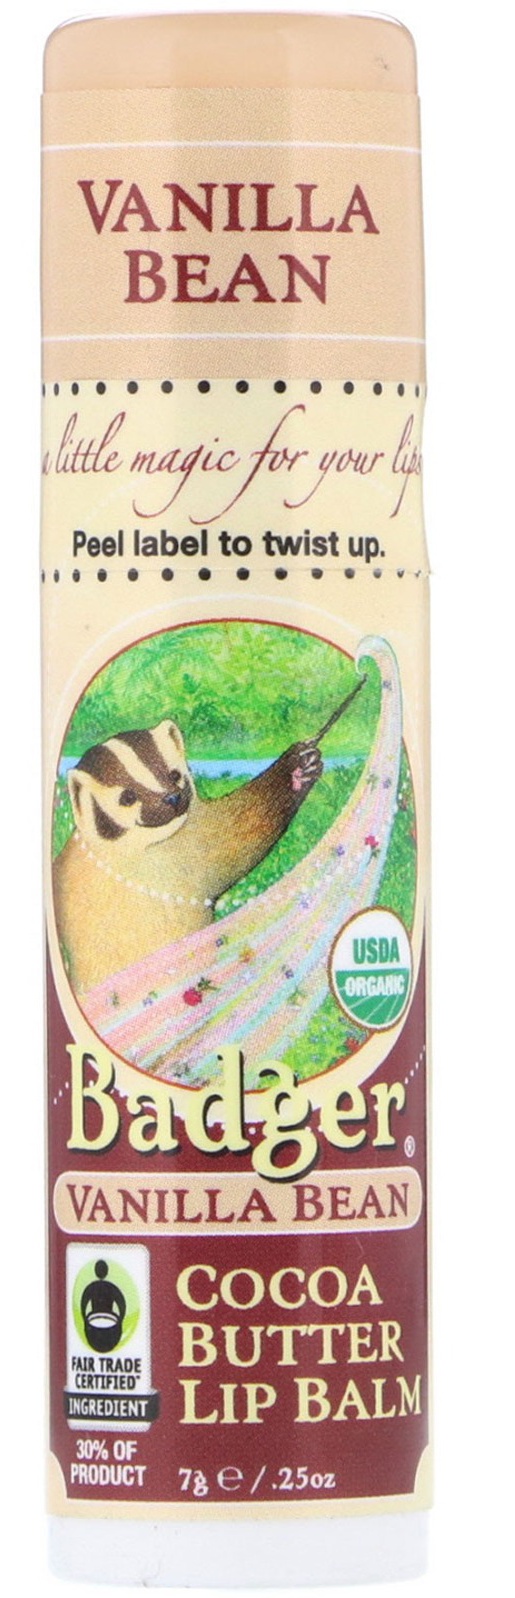 Badger Company Vanilla Bean Cocoa Butter Lip Balm